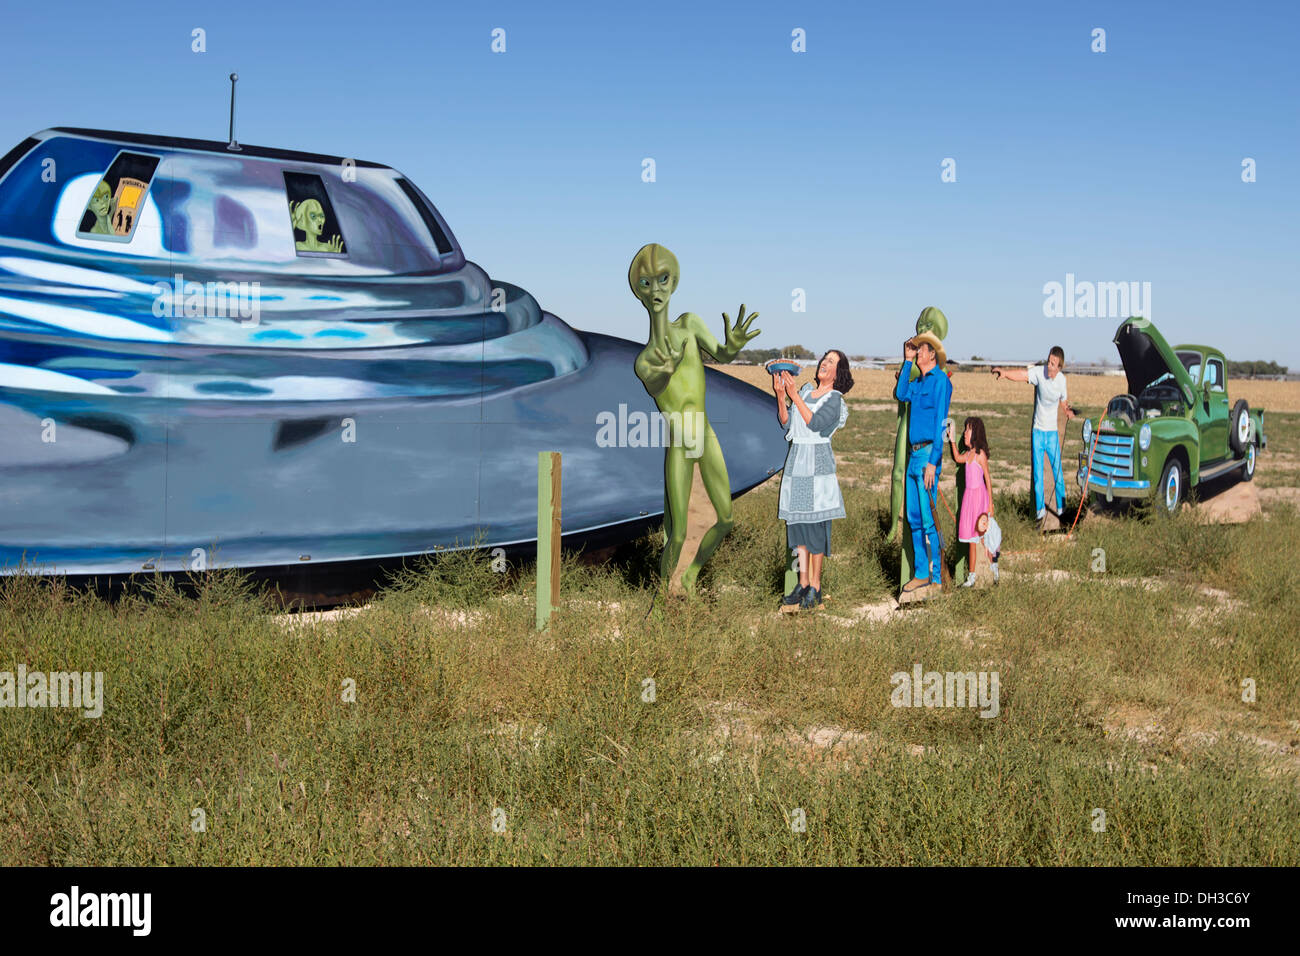 Straßenrand anzeigen Darstellung ein UFO, Aliens und Menschen vor Ort begrüßen sie außerhalb von Roswell, New Mexico. Stockfoto